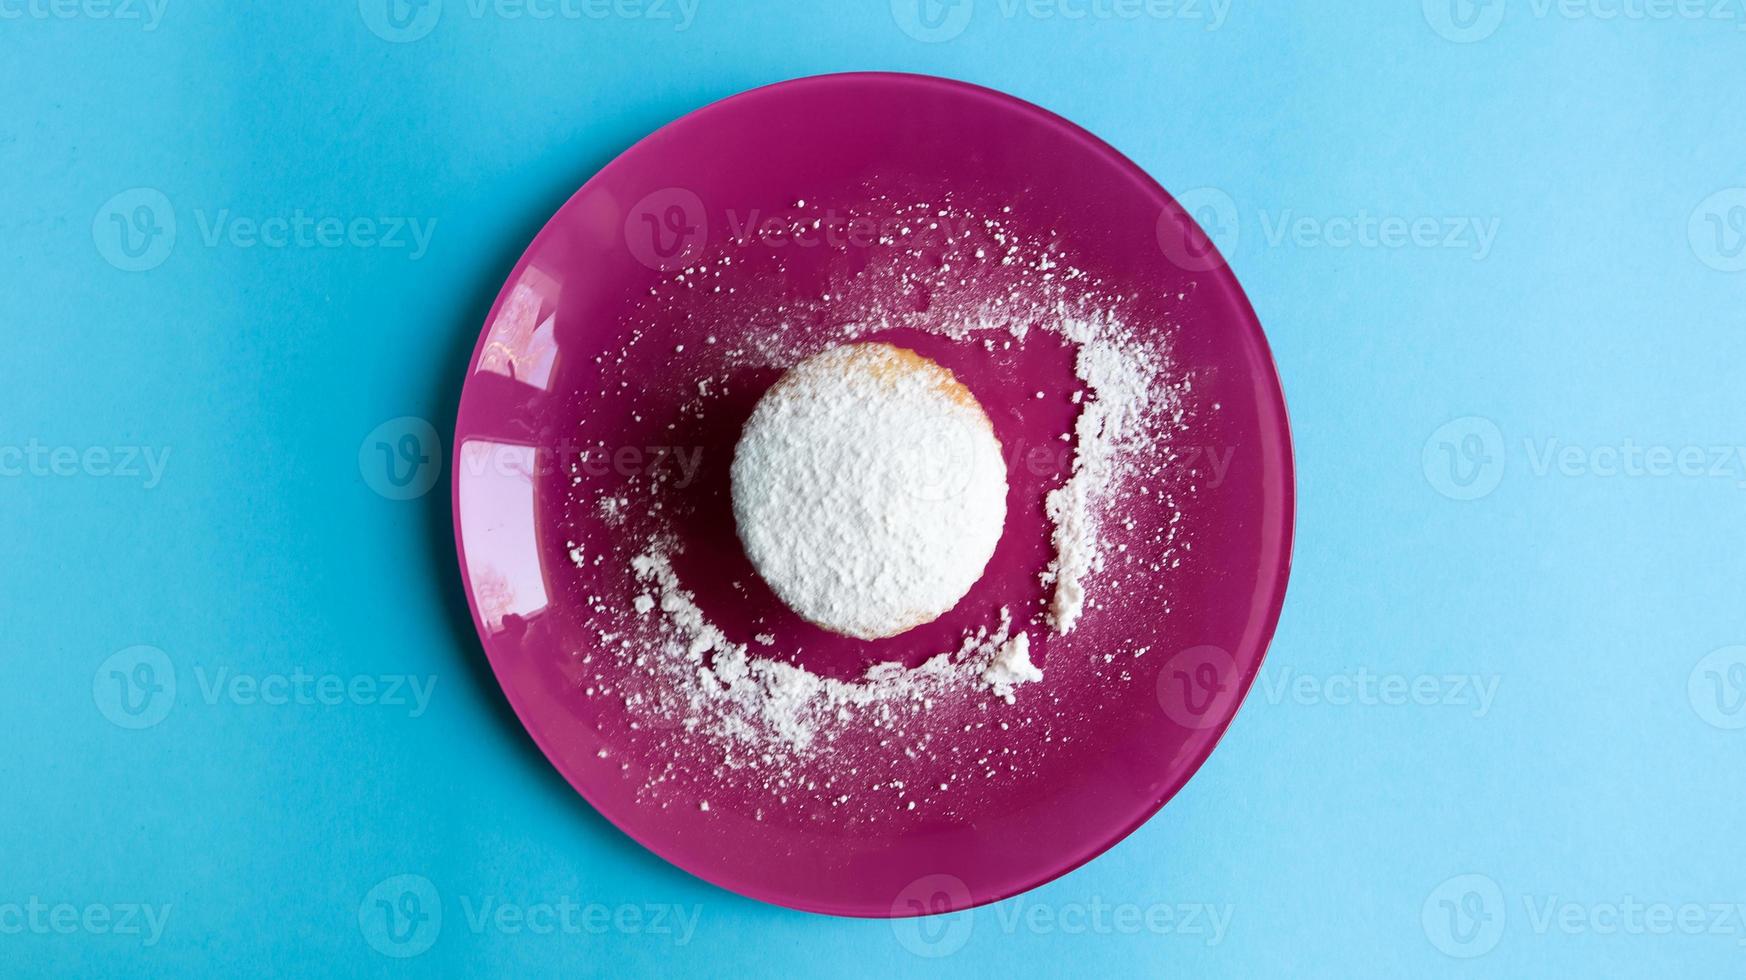 saupoudrer un fromage cottage de sucre en poudre sur une assiette rose, sur fond bleu, vue de dessus. dessert, un petit gâteau. notion de nourriture. biscuits blancs cuits au four avec une texture aérée. copie espace photo